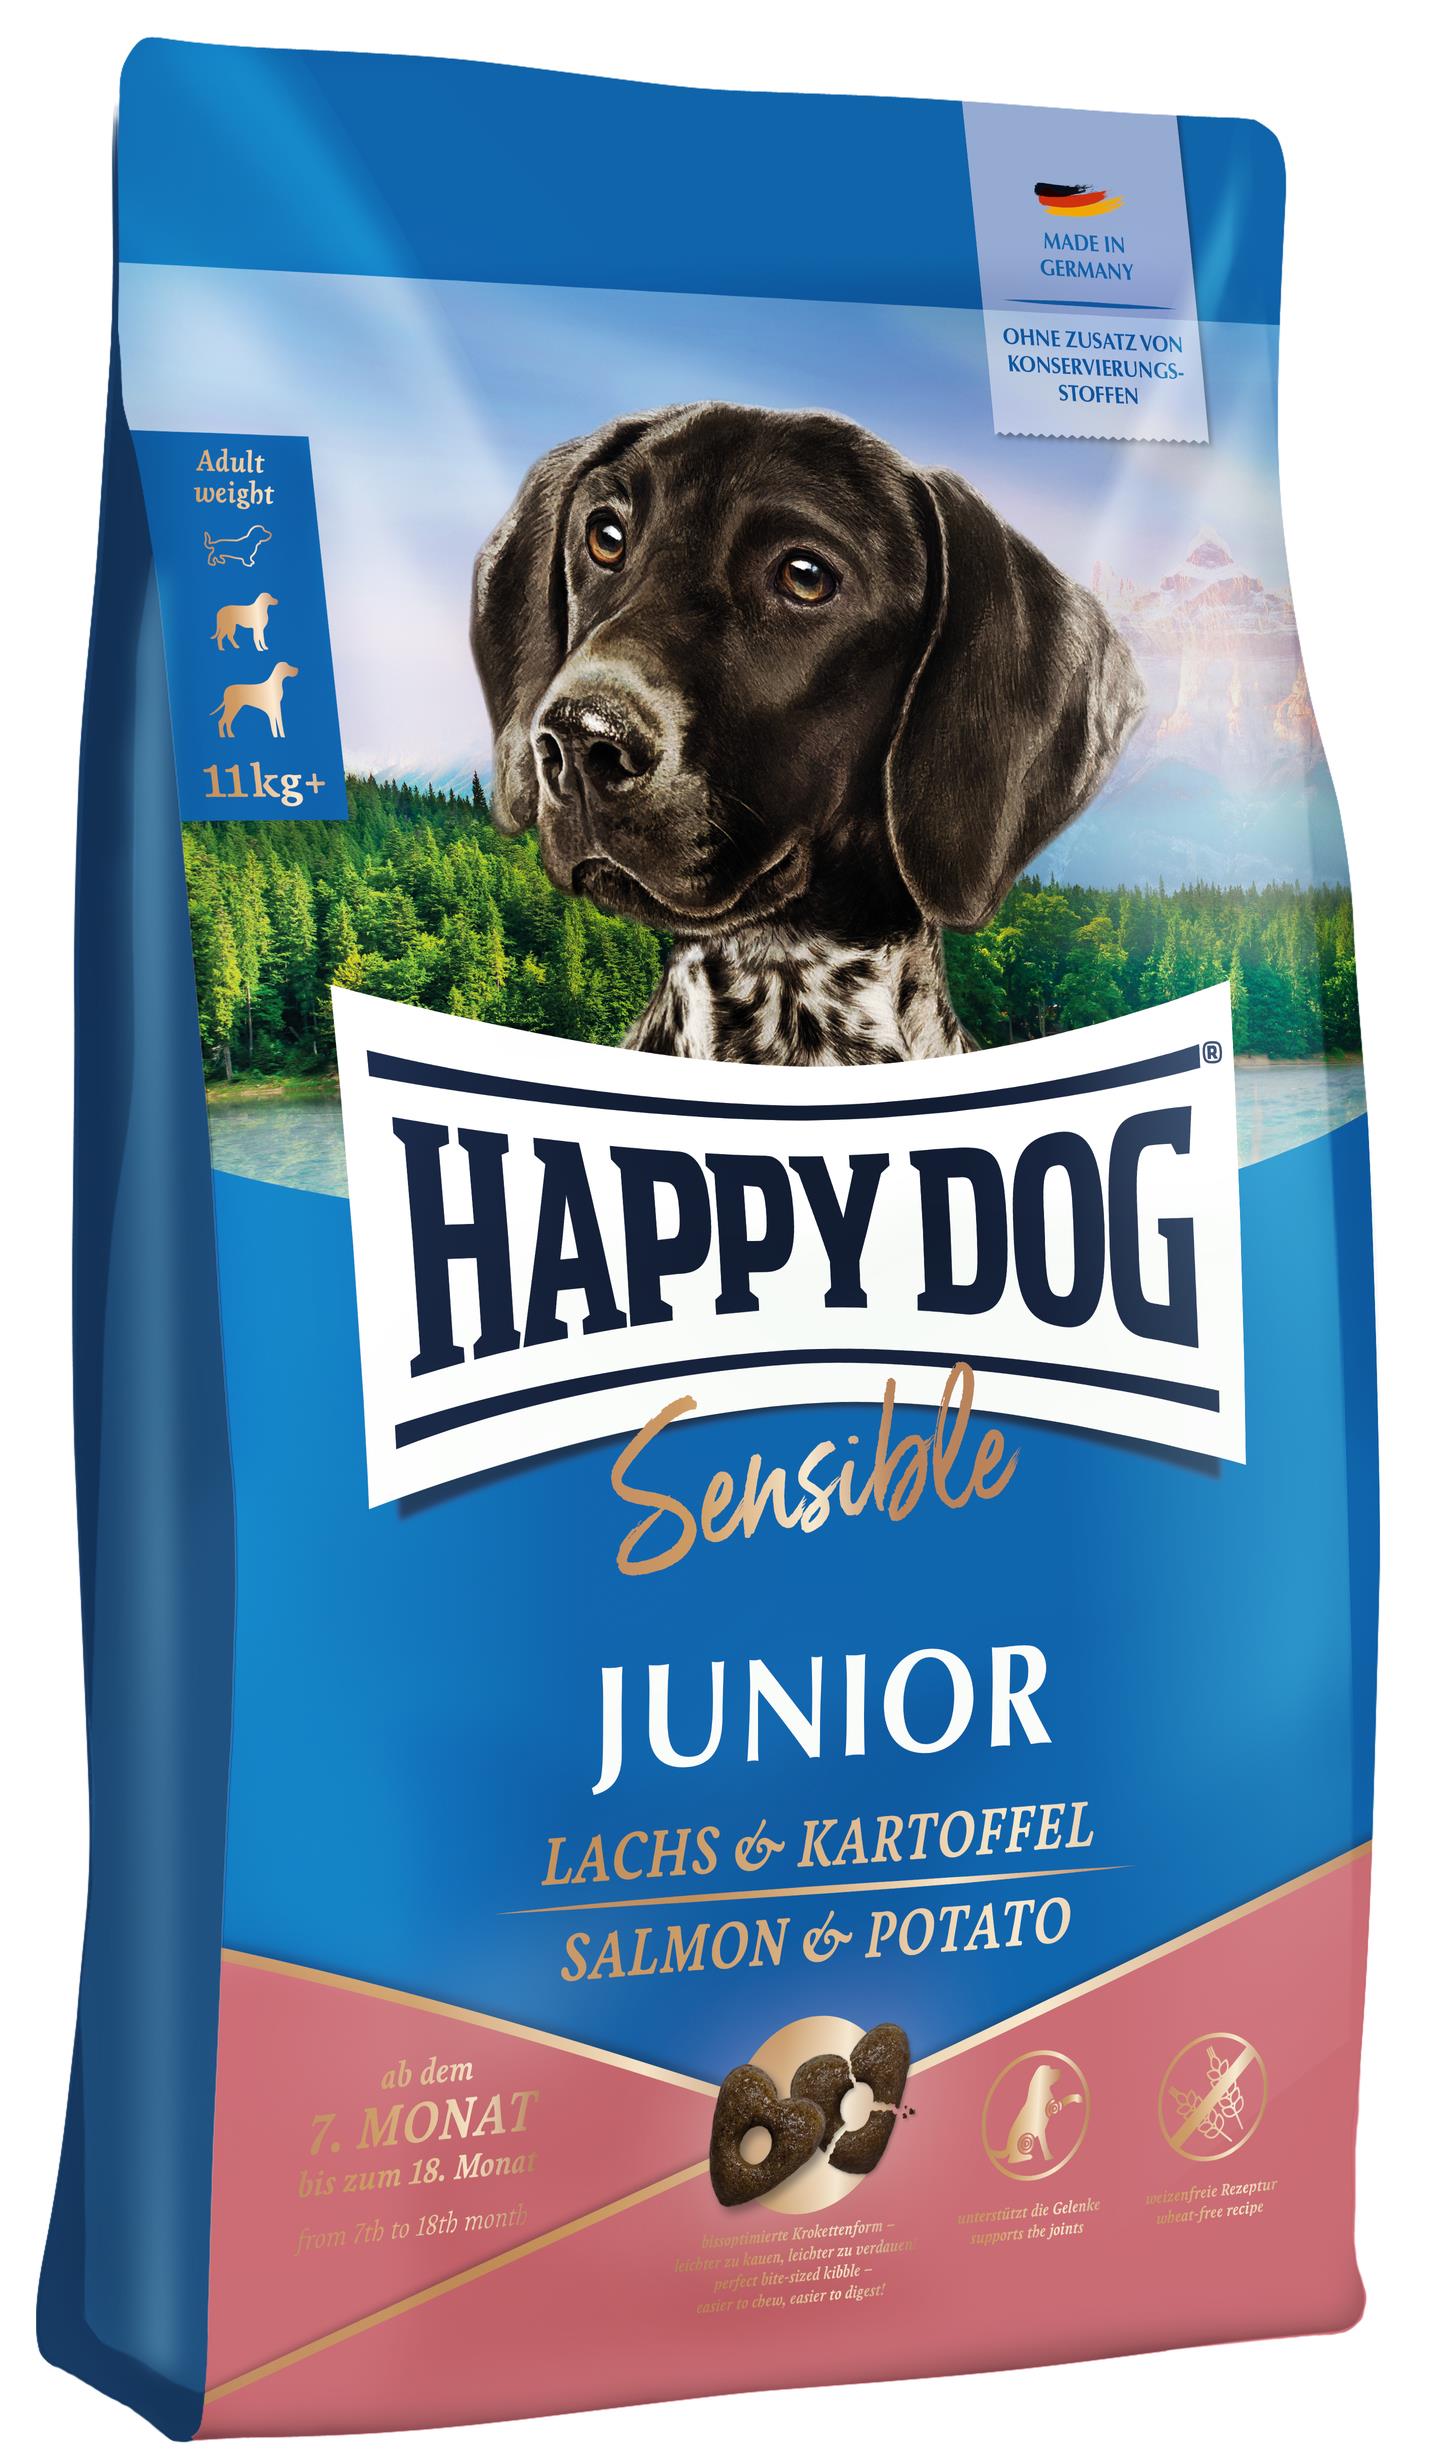 Happy Dog Sensible Junior Lachs & Kartoffel - Todoanimal.es